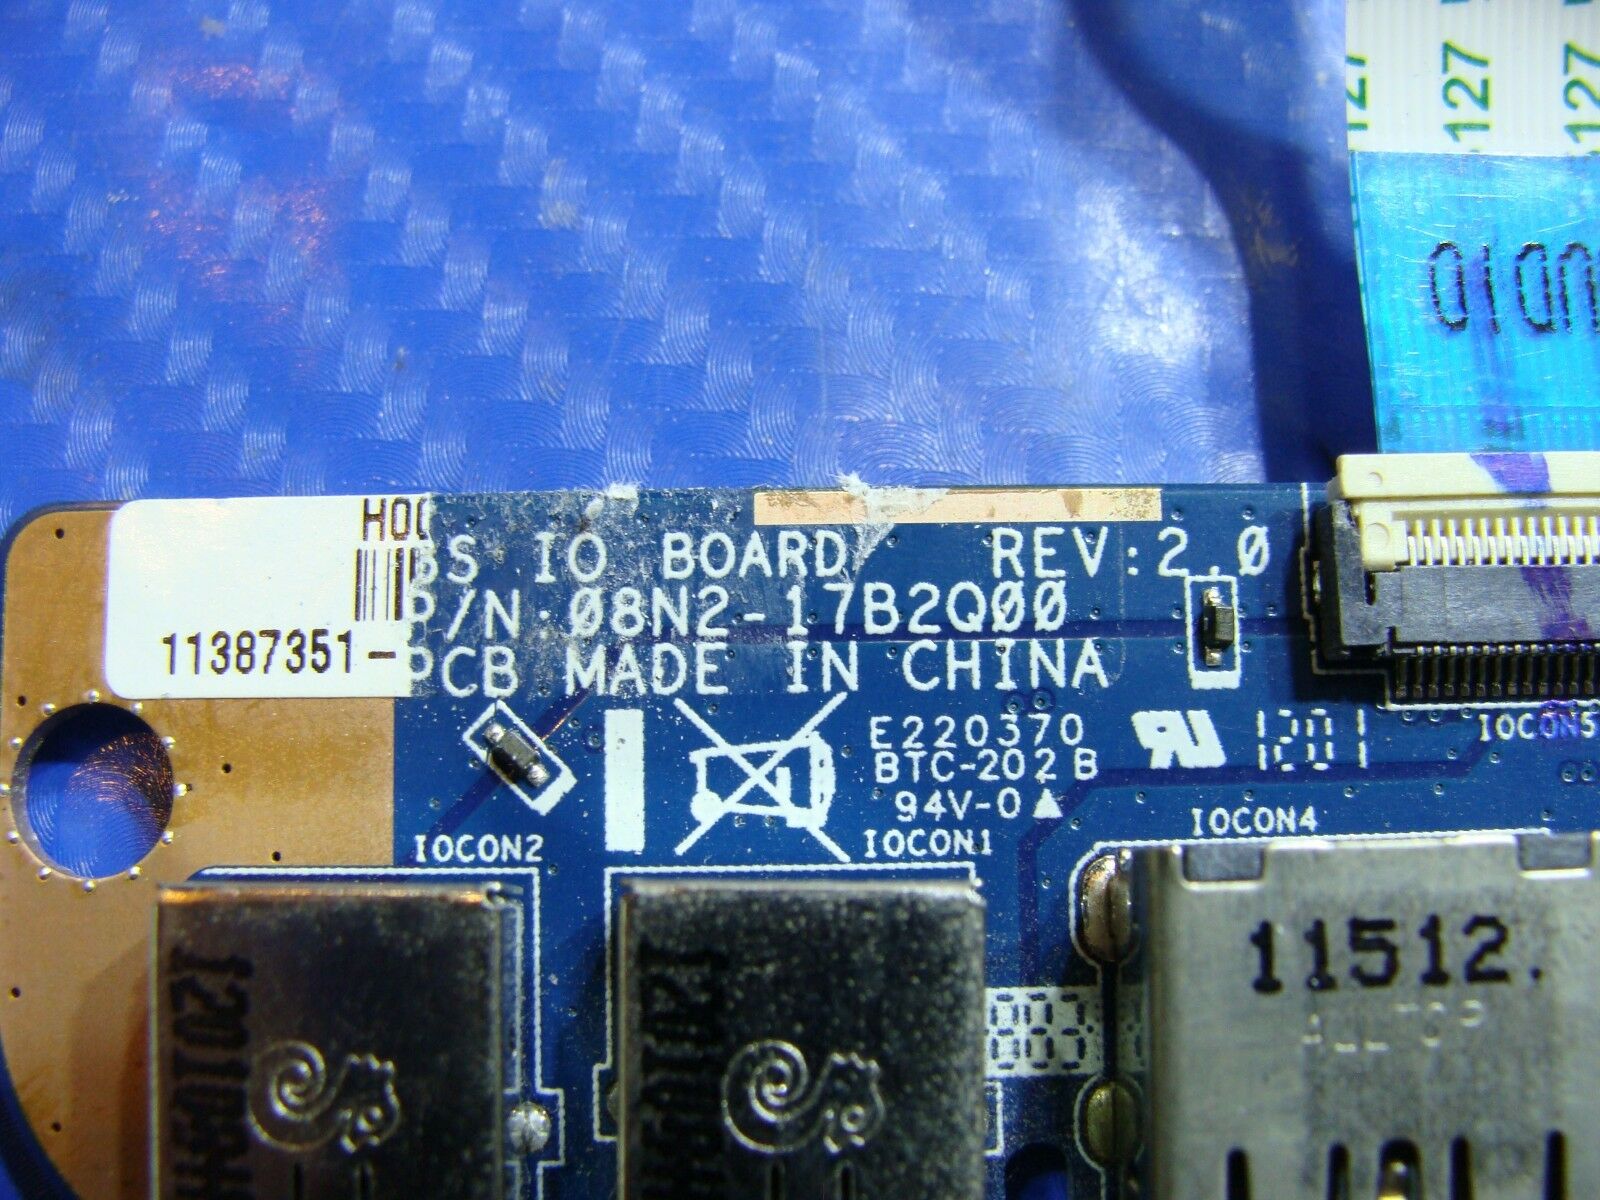 Toshiba Satellite L775D-S7108 17.3